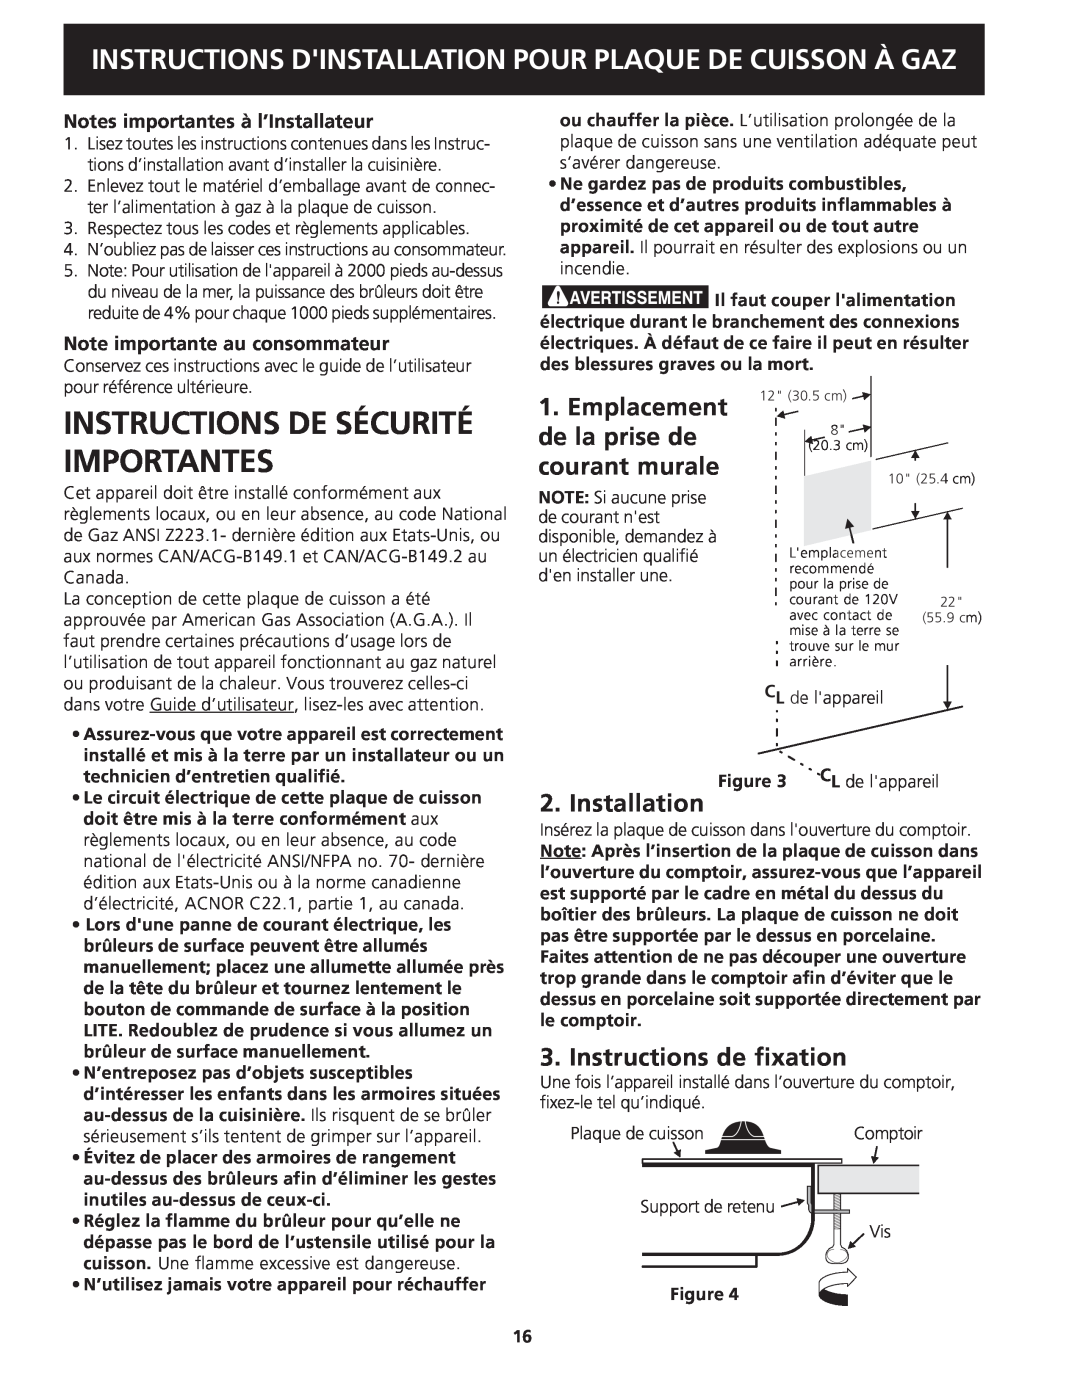 Frigidaire 318201451 dimensions Instructions De Sécurité Importantes, Instructions de fixation, Installation 